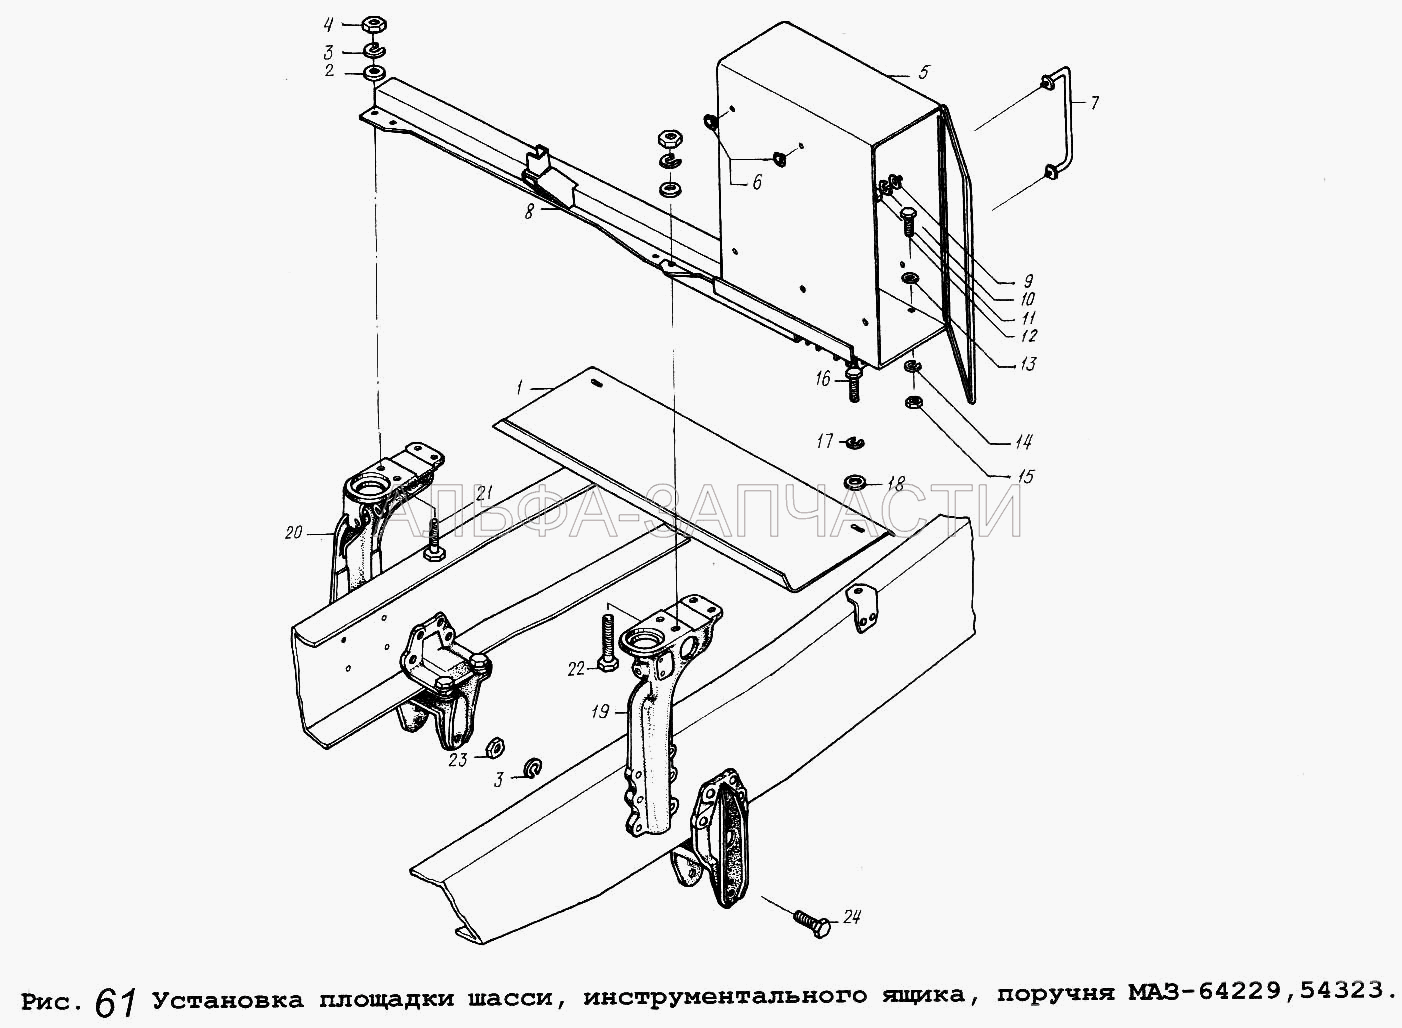 Установка площадки шасси, инструментального ящика, поручня МАЗ-64229,54323 (202123 Болт М16-6gх50) 